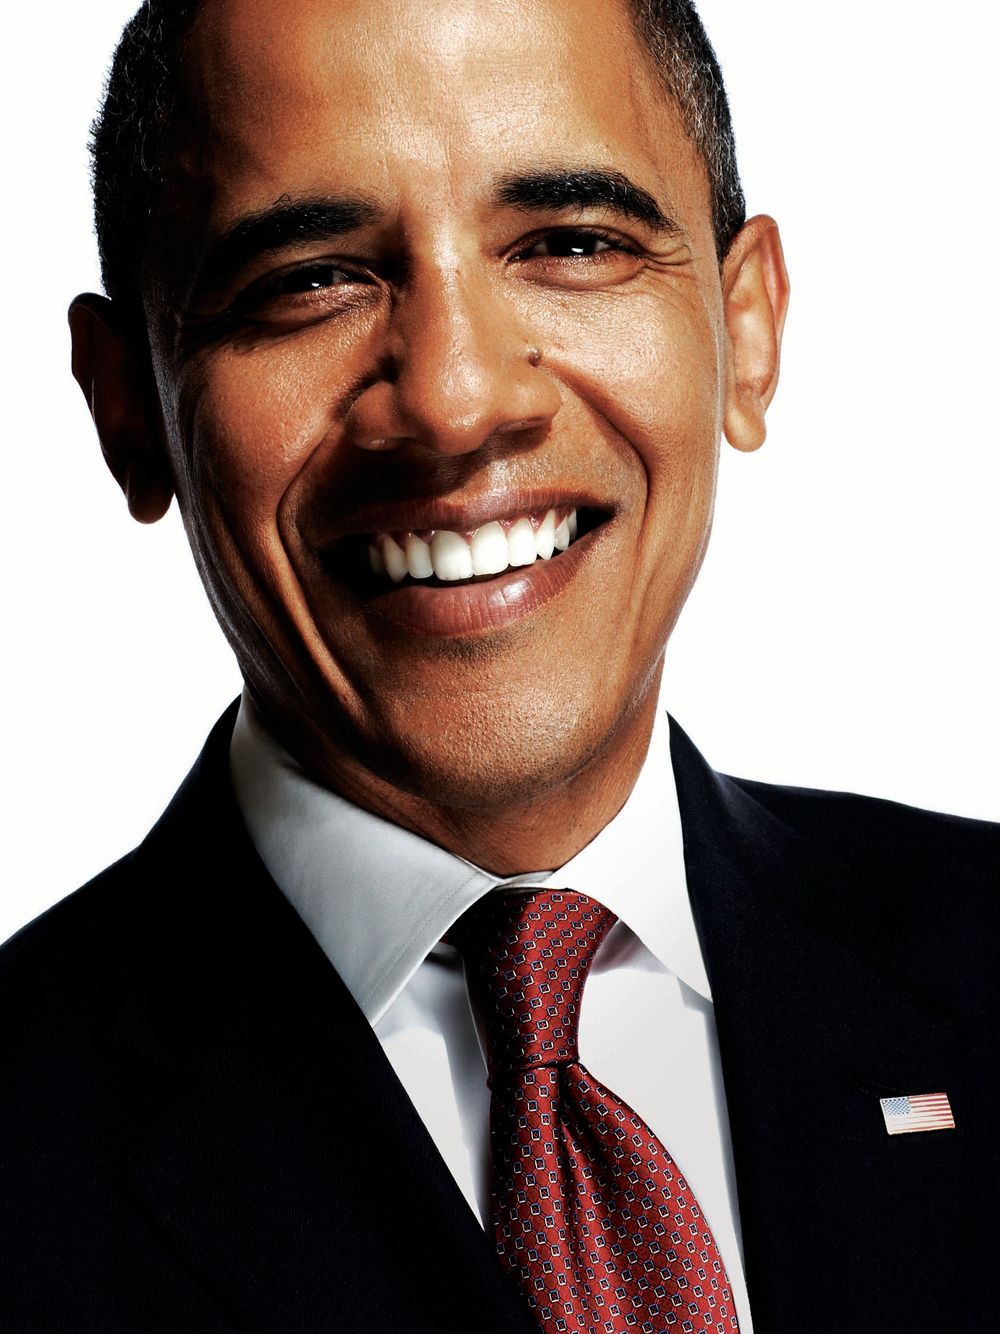 Pres Barack Obama 